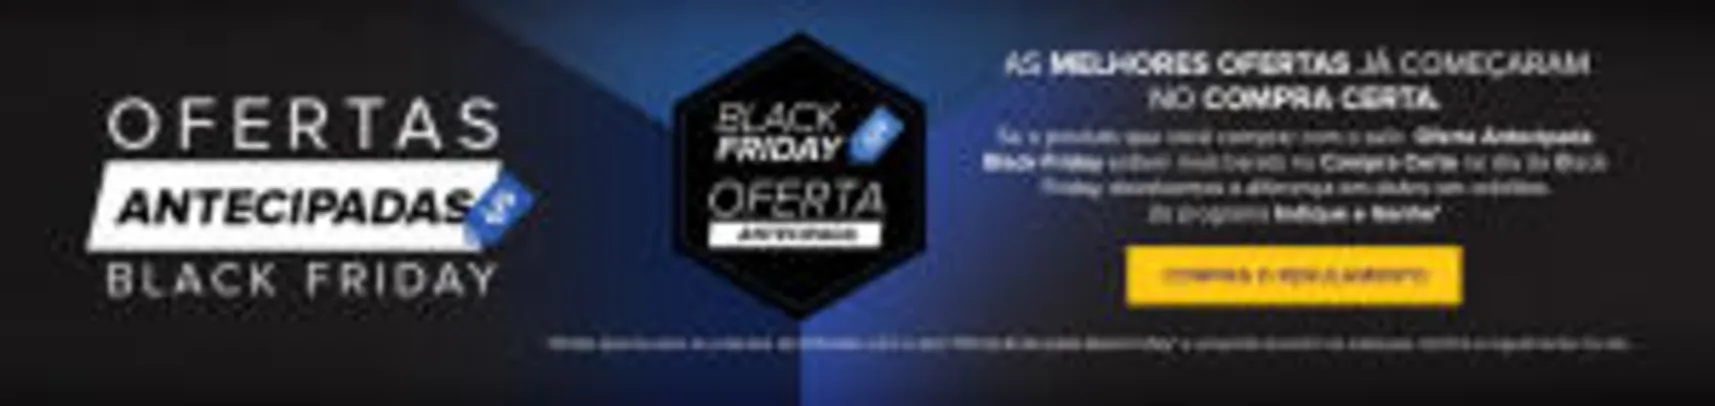 Oferta Antecipada Black Friday Compra Certa - a partir de R$6,50